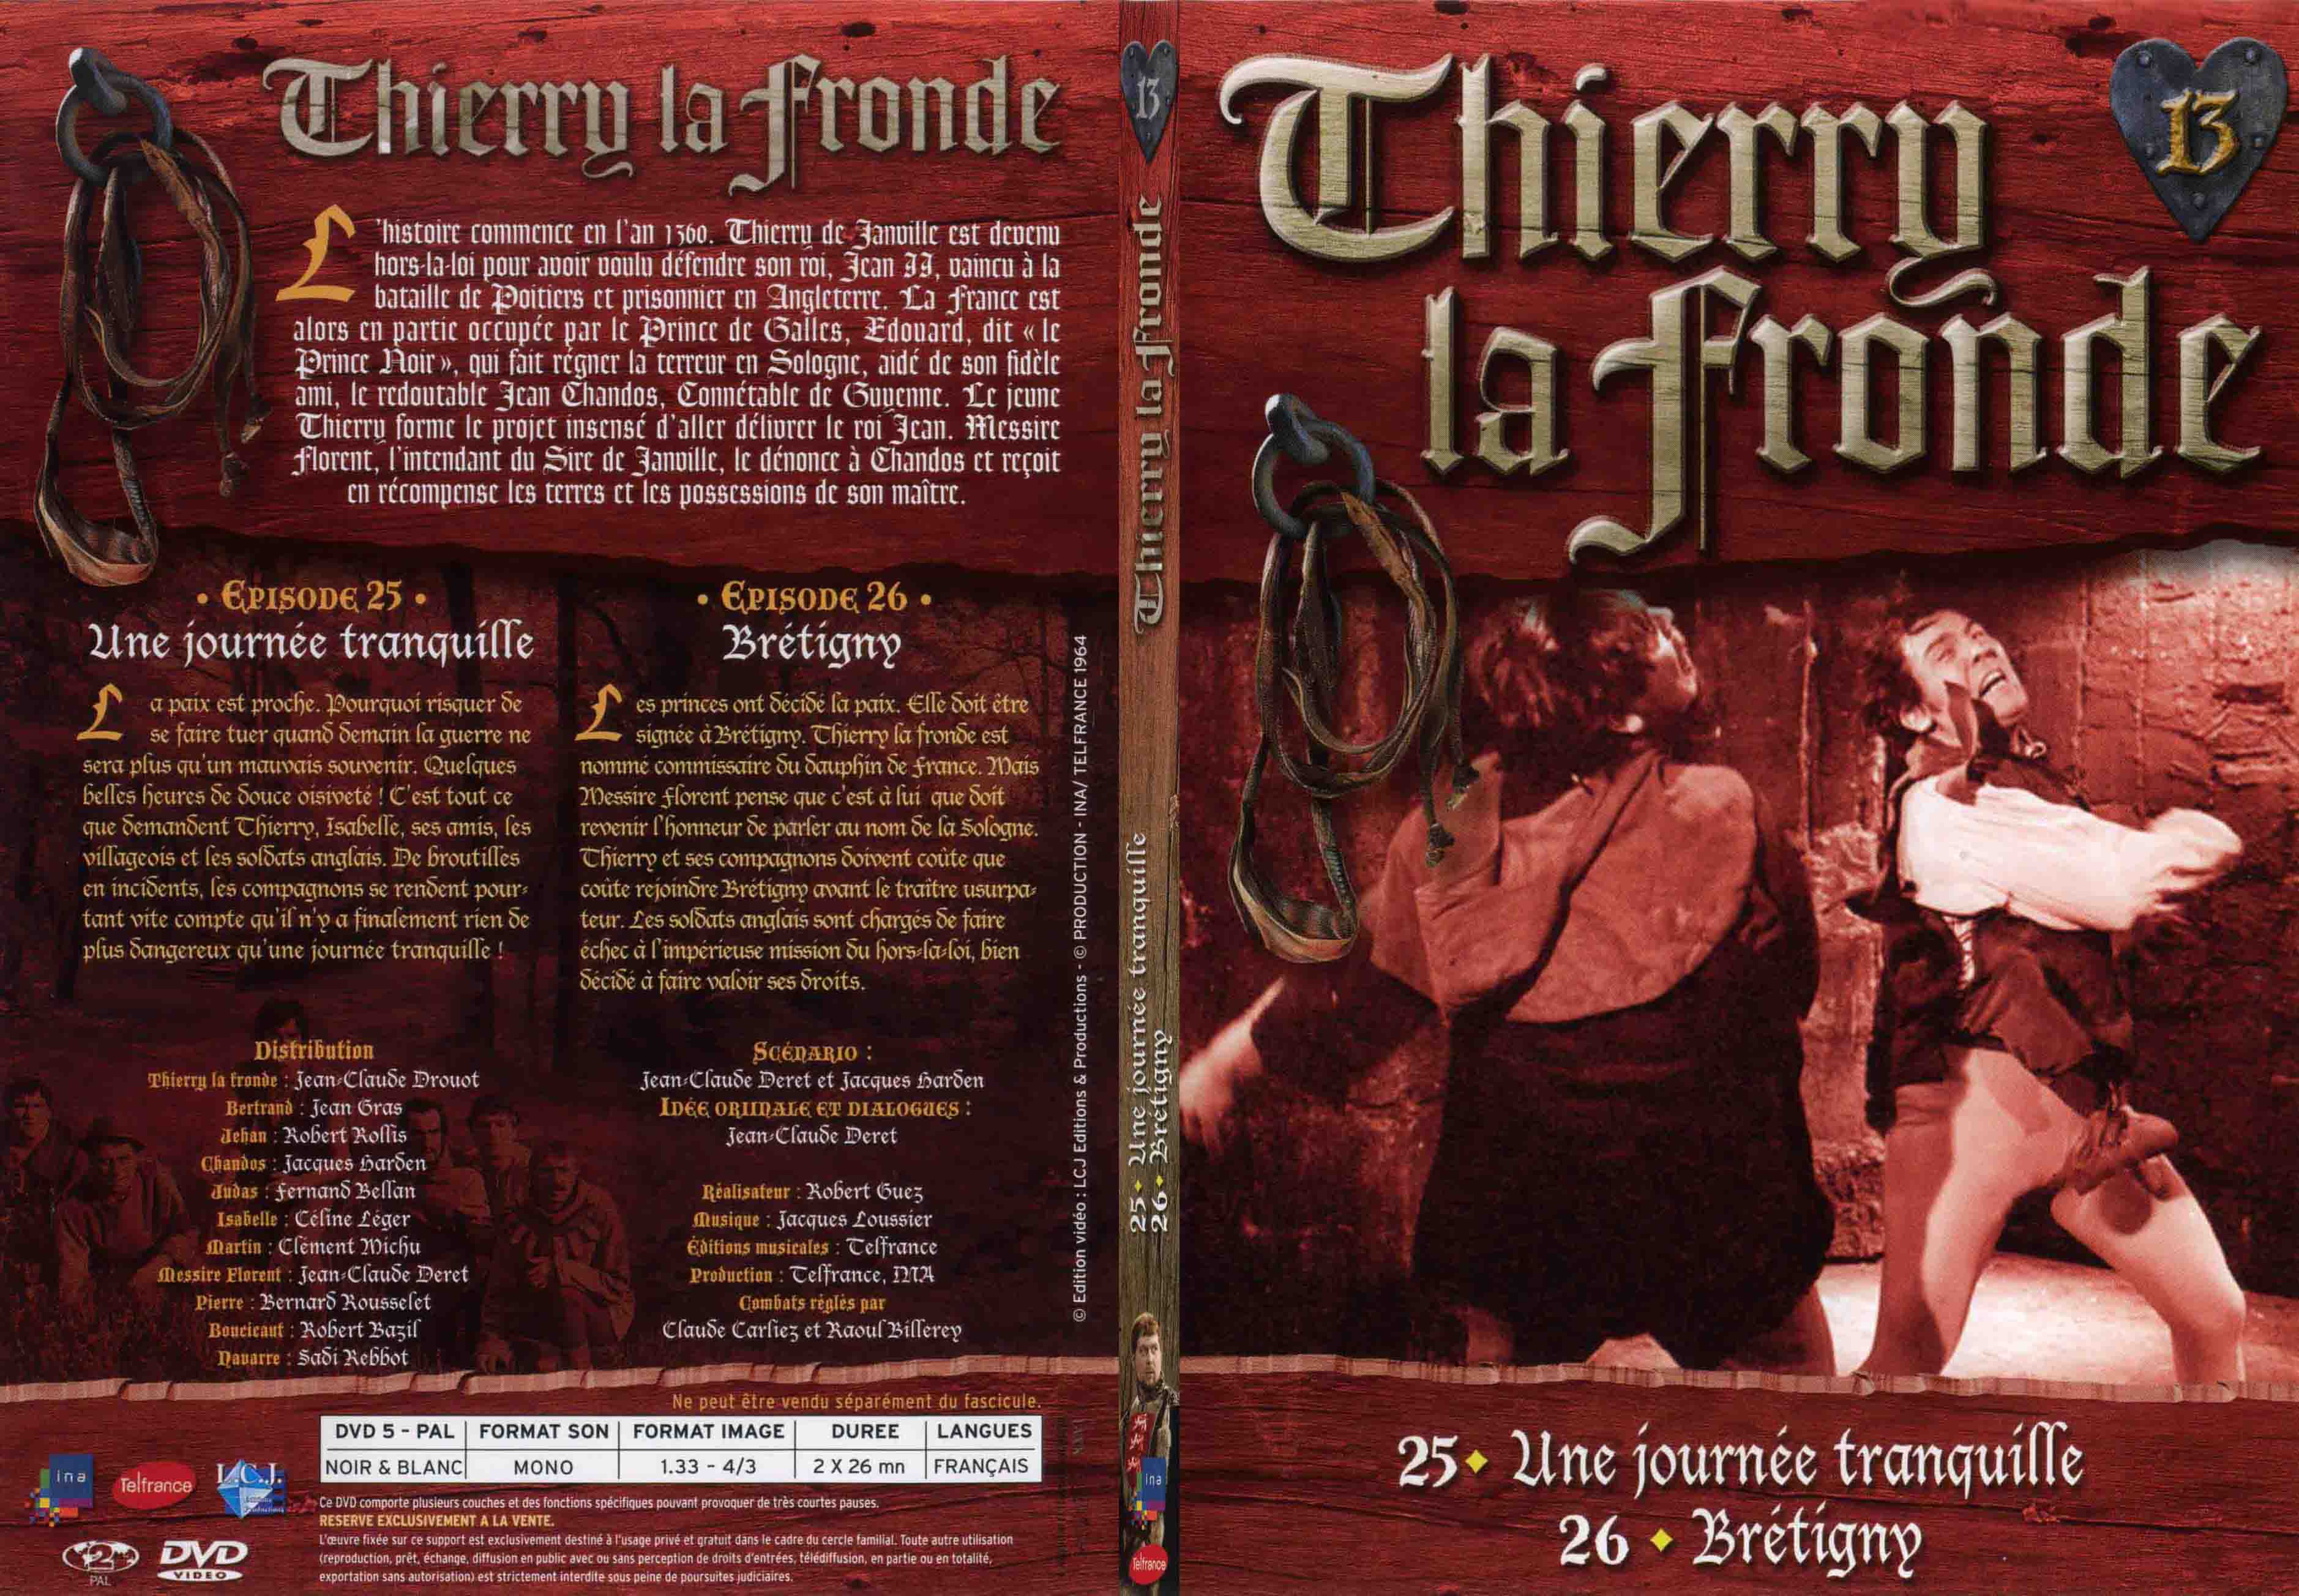 Jaquette DVD Thierry la Fronde vol 13 - SLIM